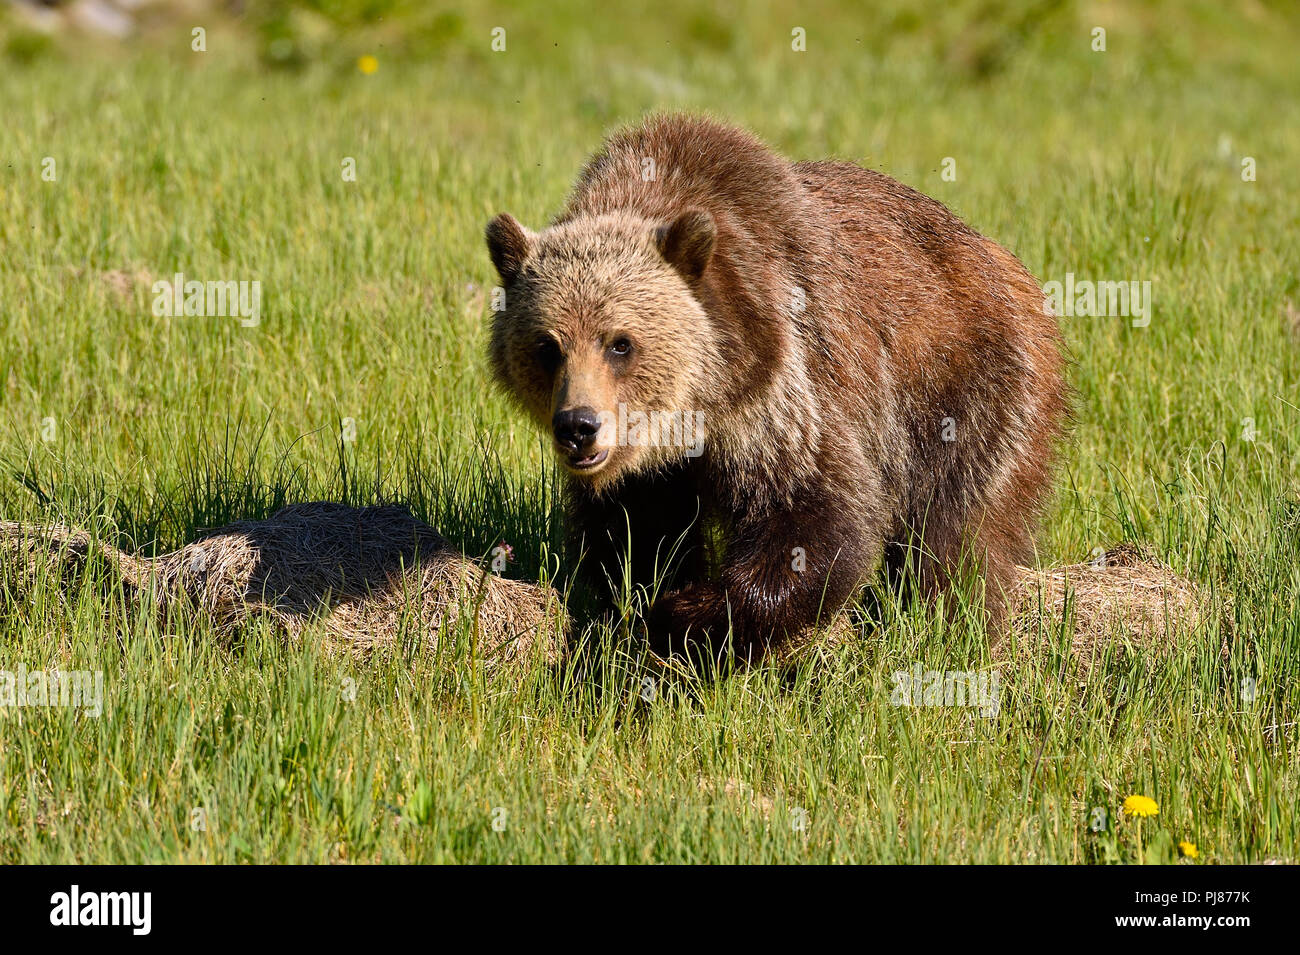 Ein junger Grizzly Bär Ursus arctos Stalking; mit einem Blick auf ihrem Gesicht zu Fuß vorwärts durch eine offene Wiese in ländlichen Alberta, Kanada. Stockfoto